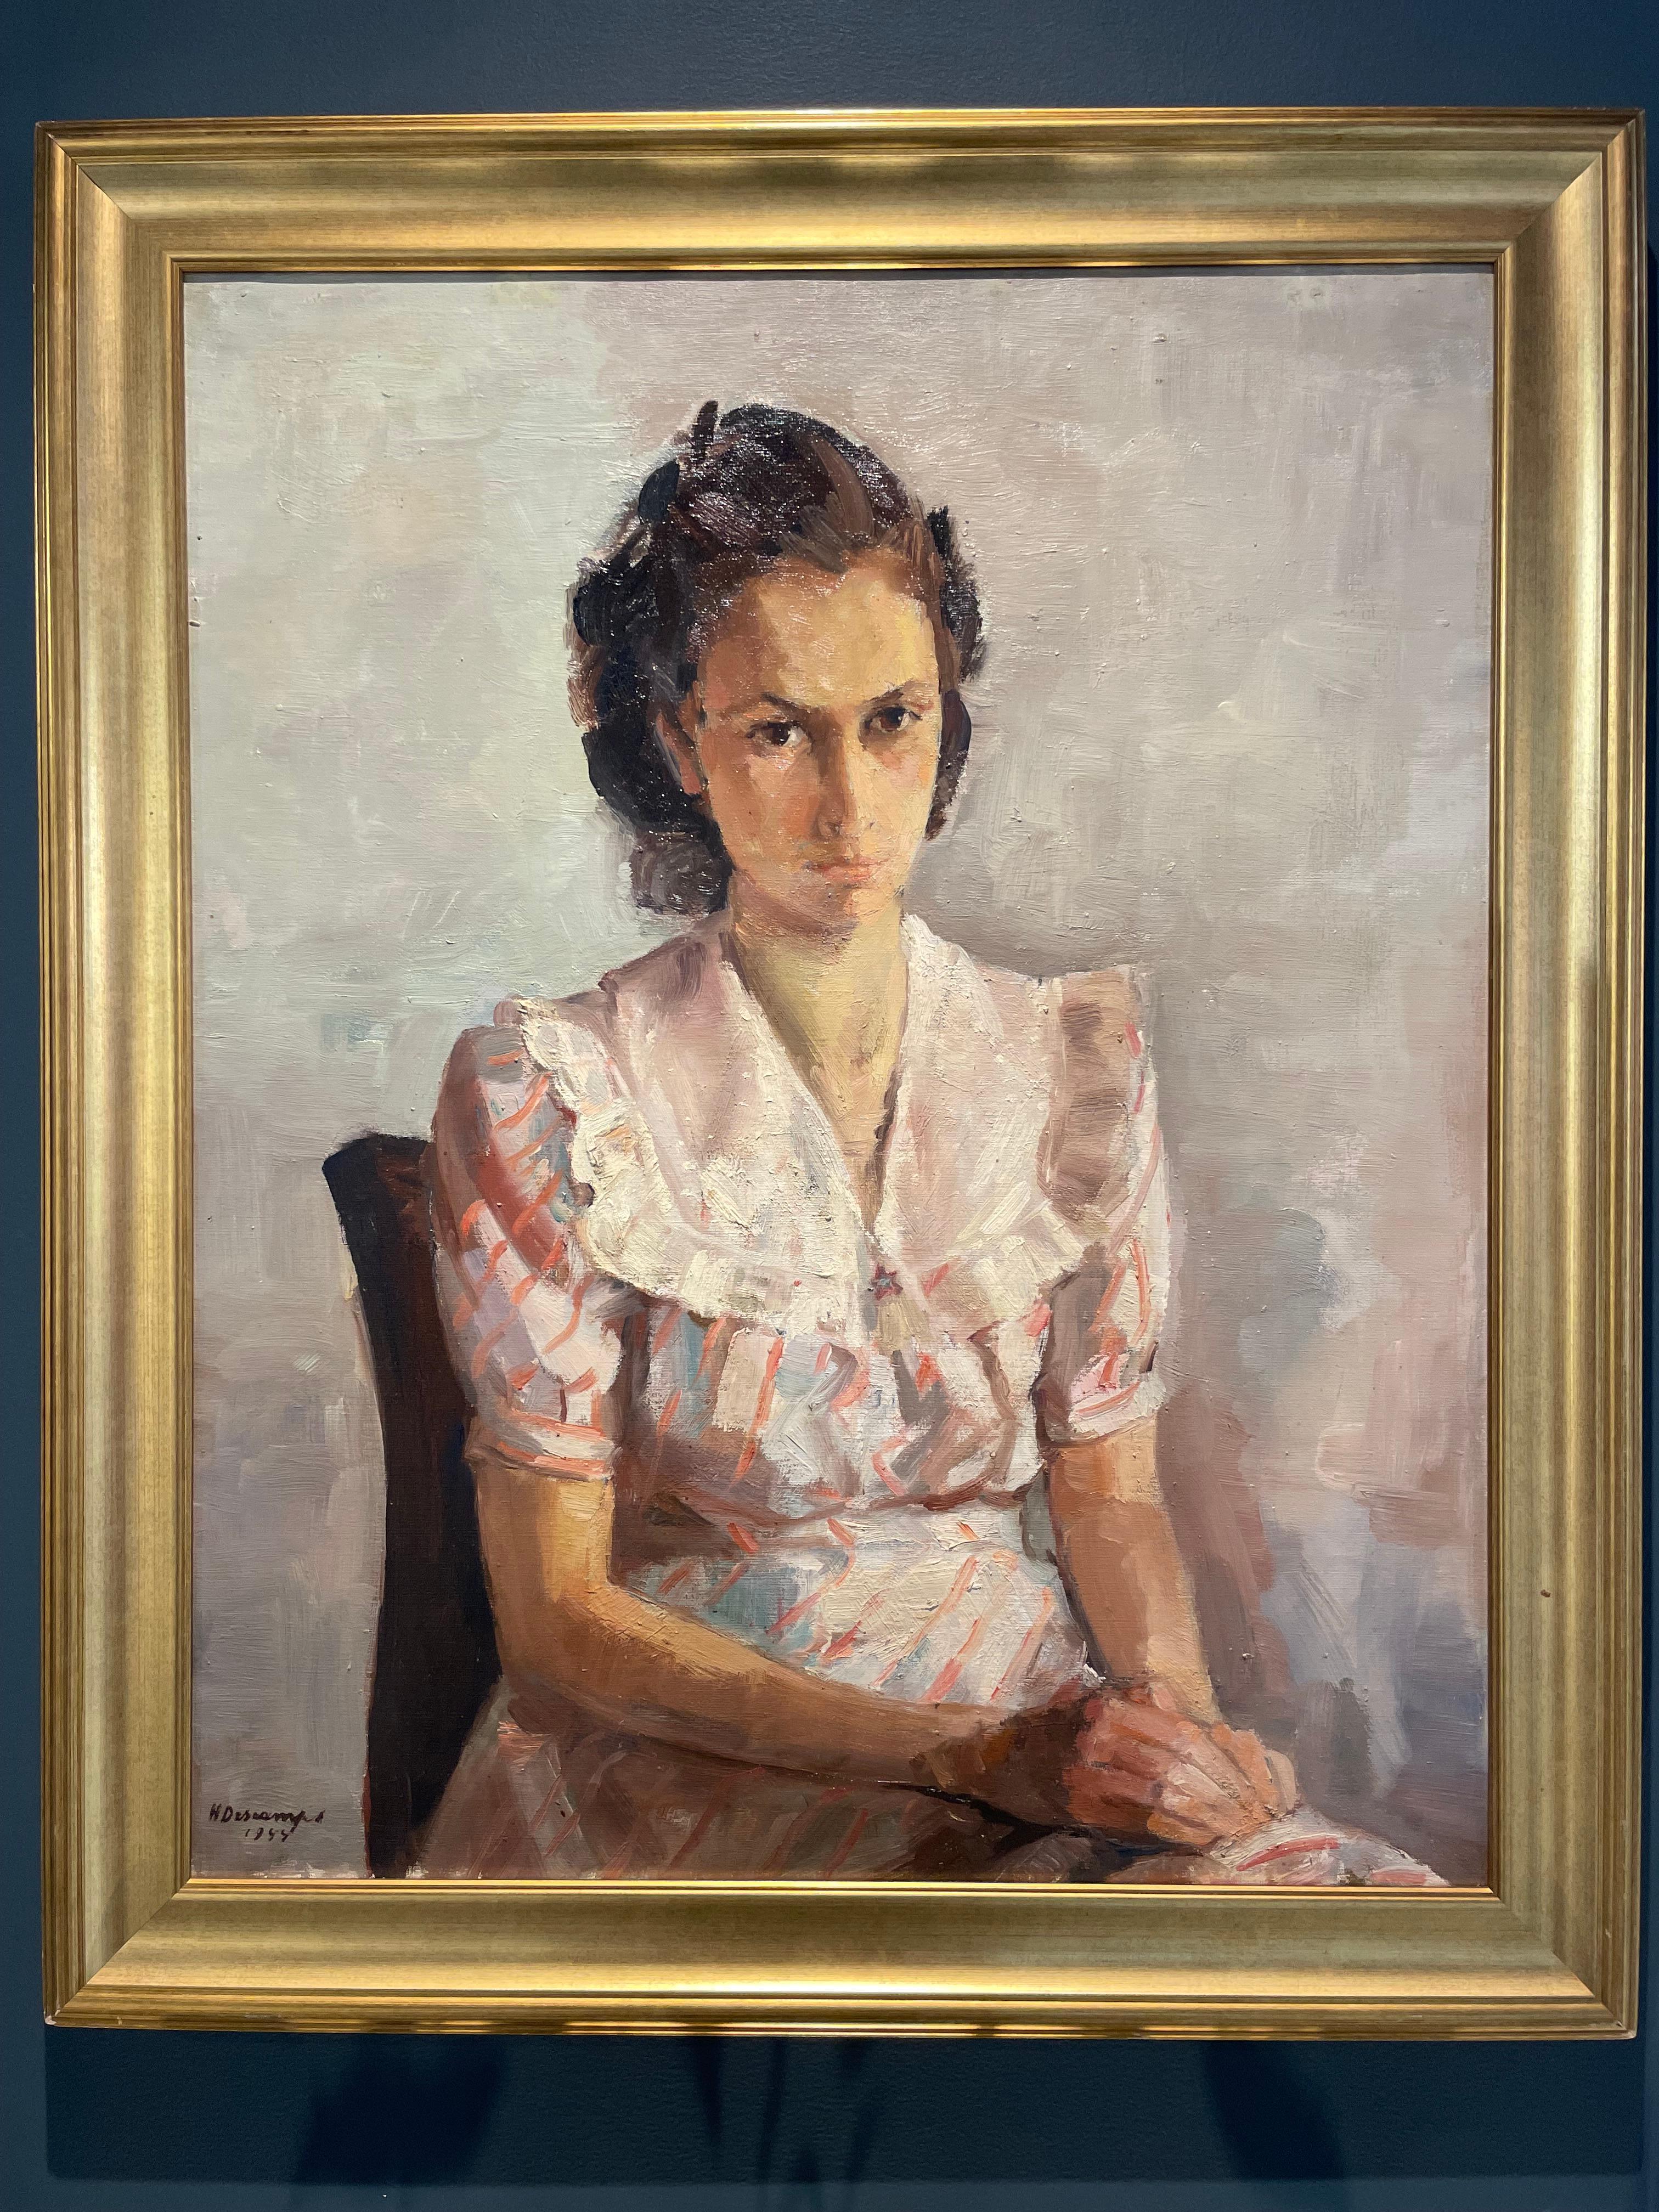 Portrait du 20ème siècle signé Henri Descamps (1898-1990) Jeune fille brune assise portant une robe blanche avec des nuances de rose et de bleu avec des rayures rouges, les mains croisées, et un regard intense et persistant.